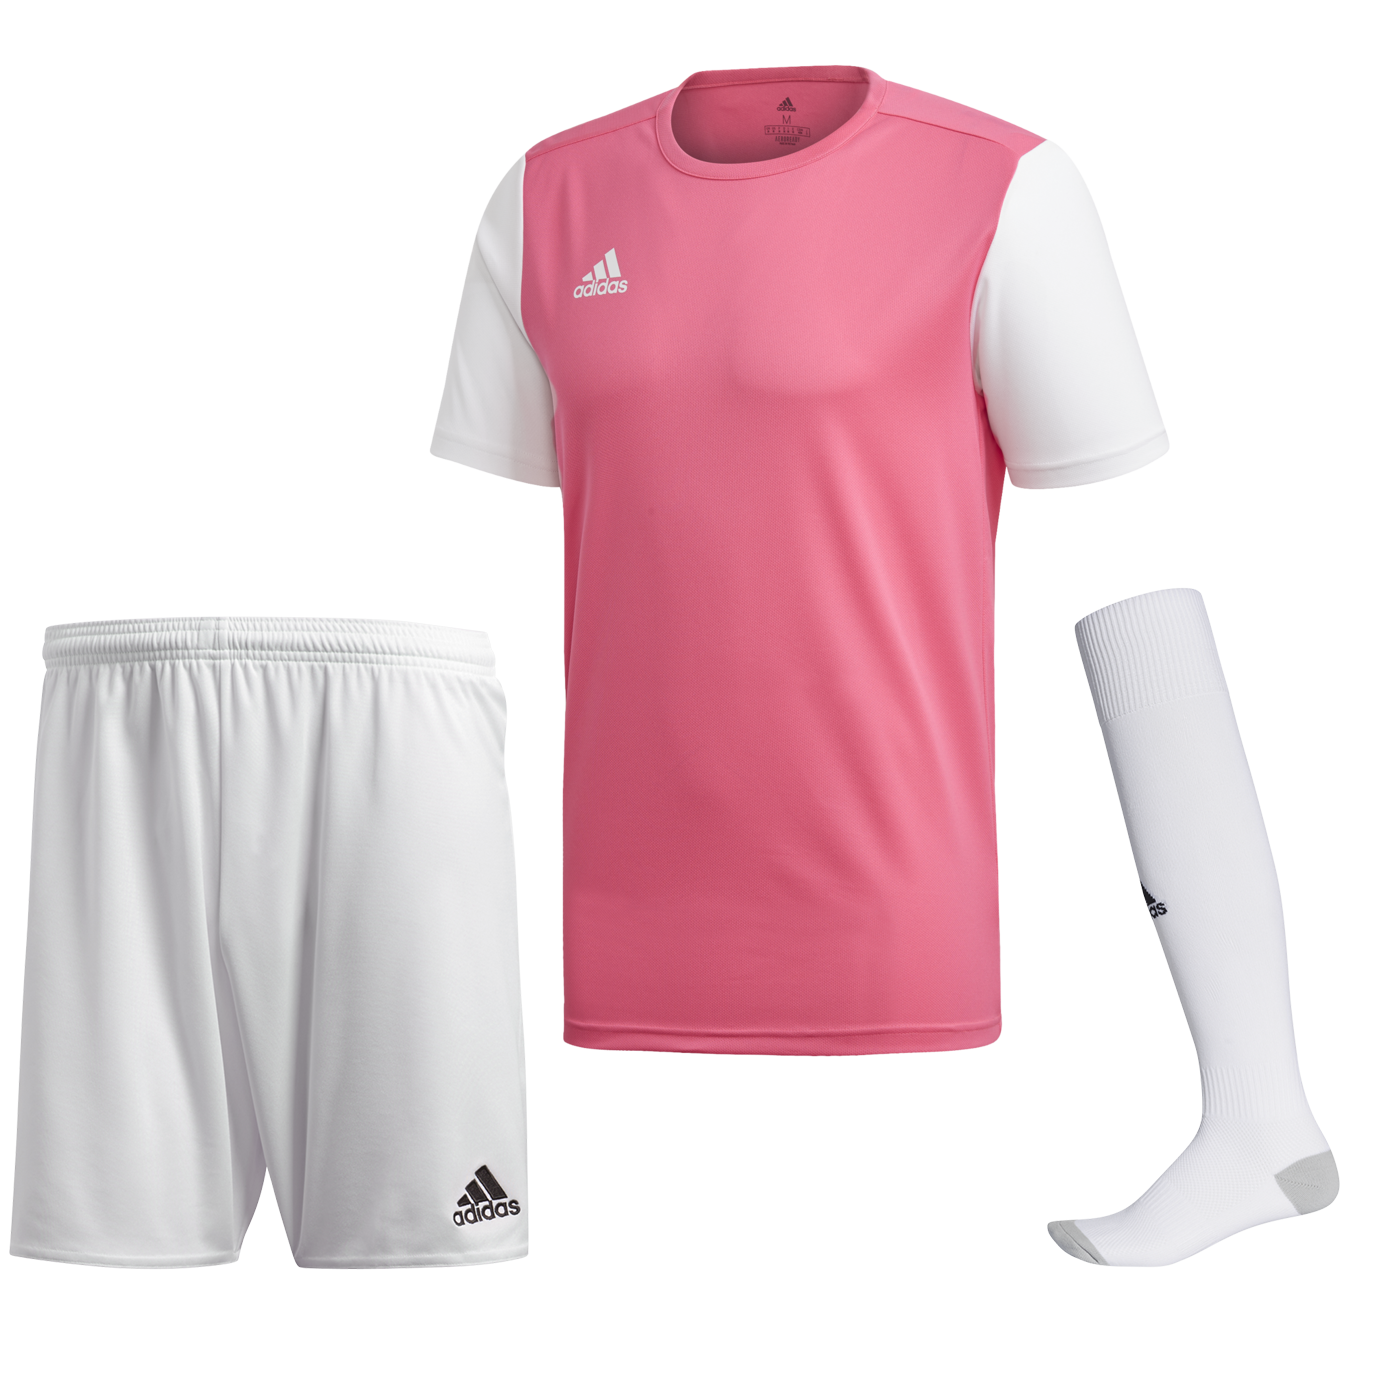 Adidas Estro 19 růžová/bílá UK Junior S Dětské